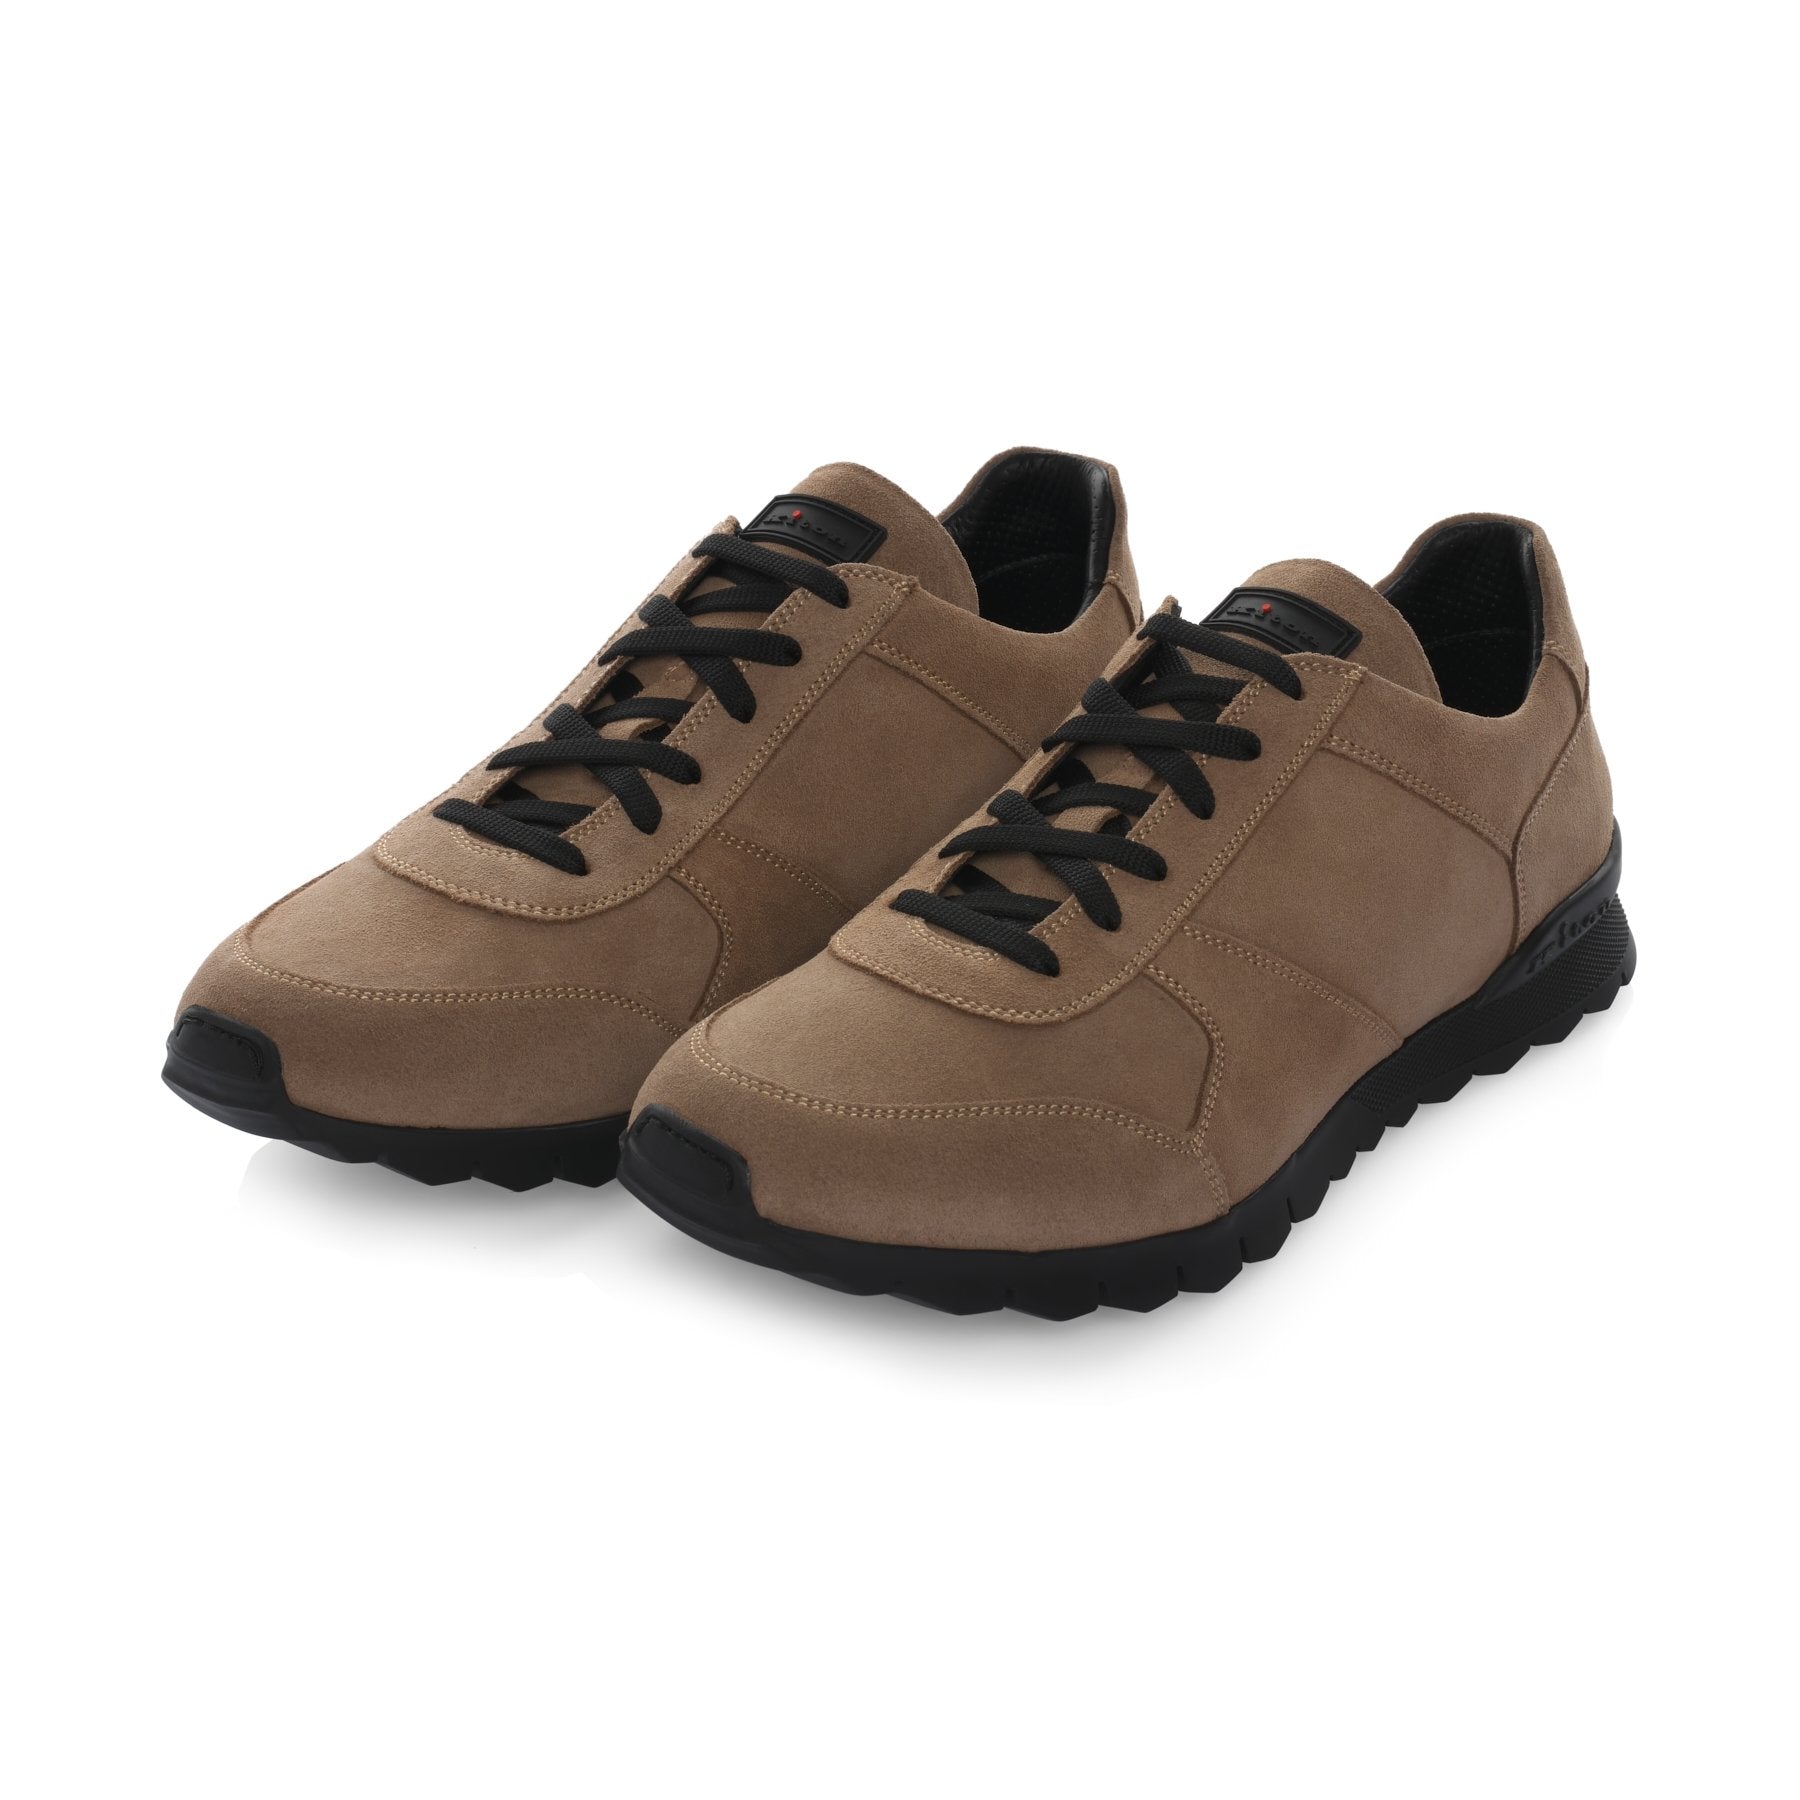 Men's Sneakers Shoes - Online Boutique Sartale.com